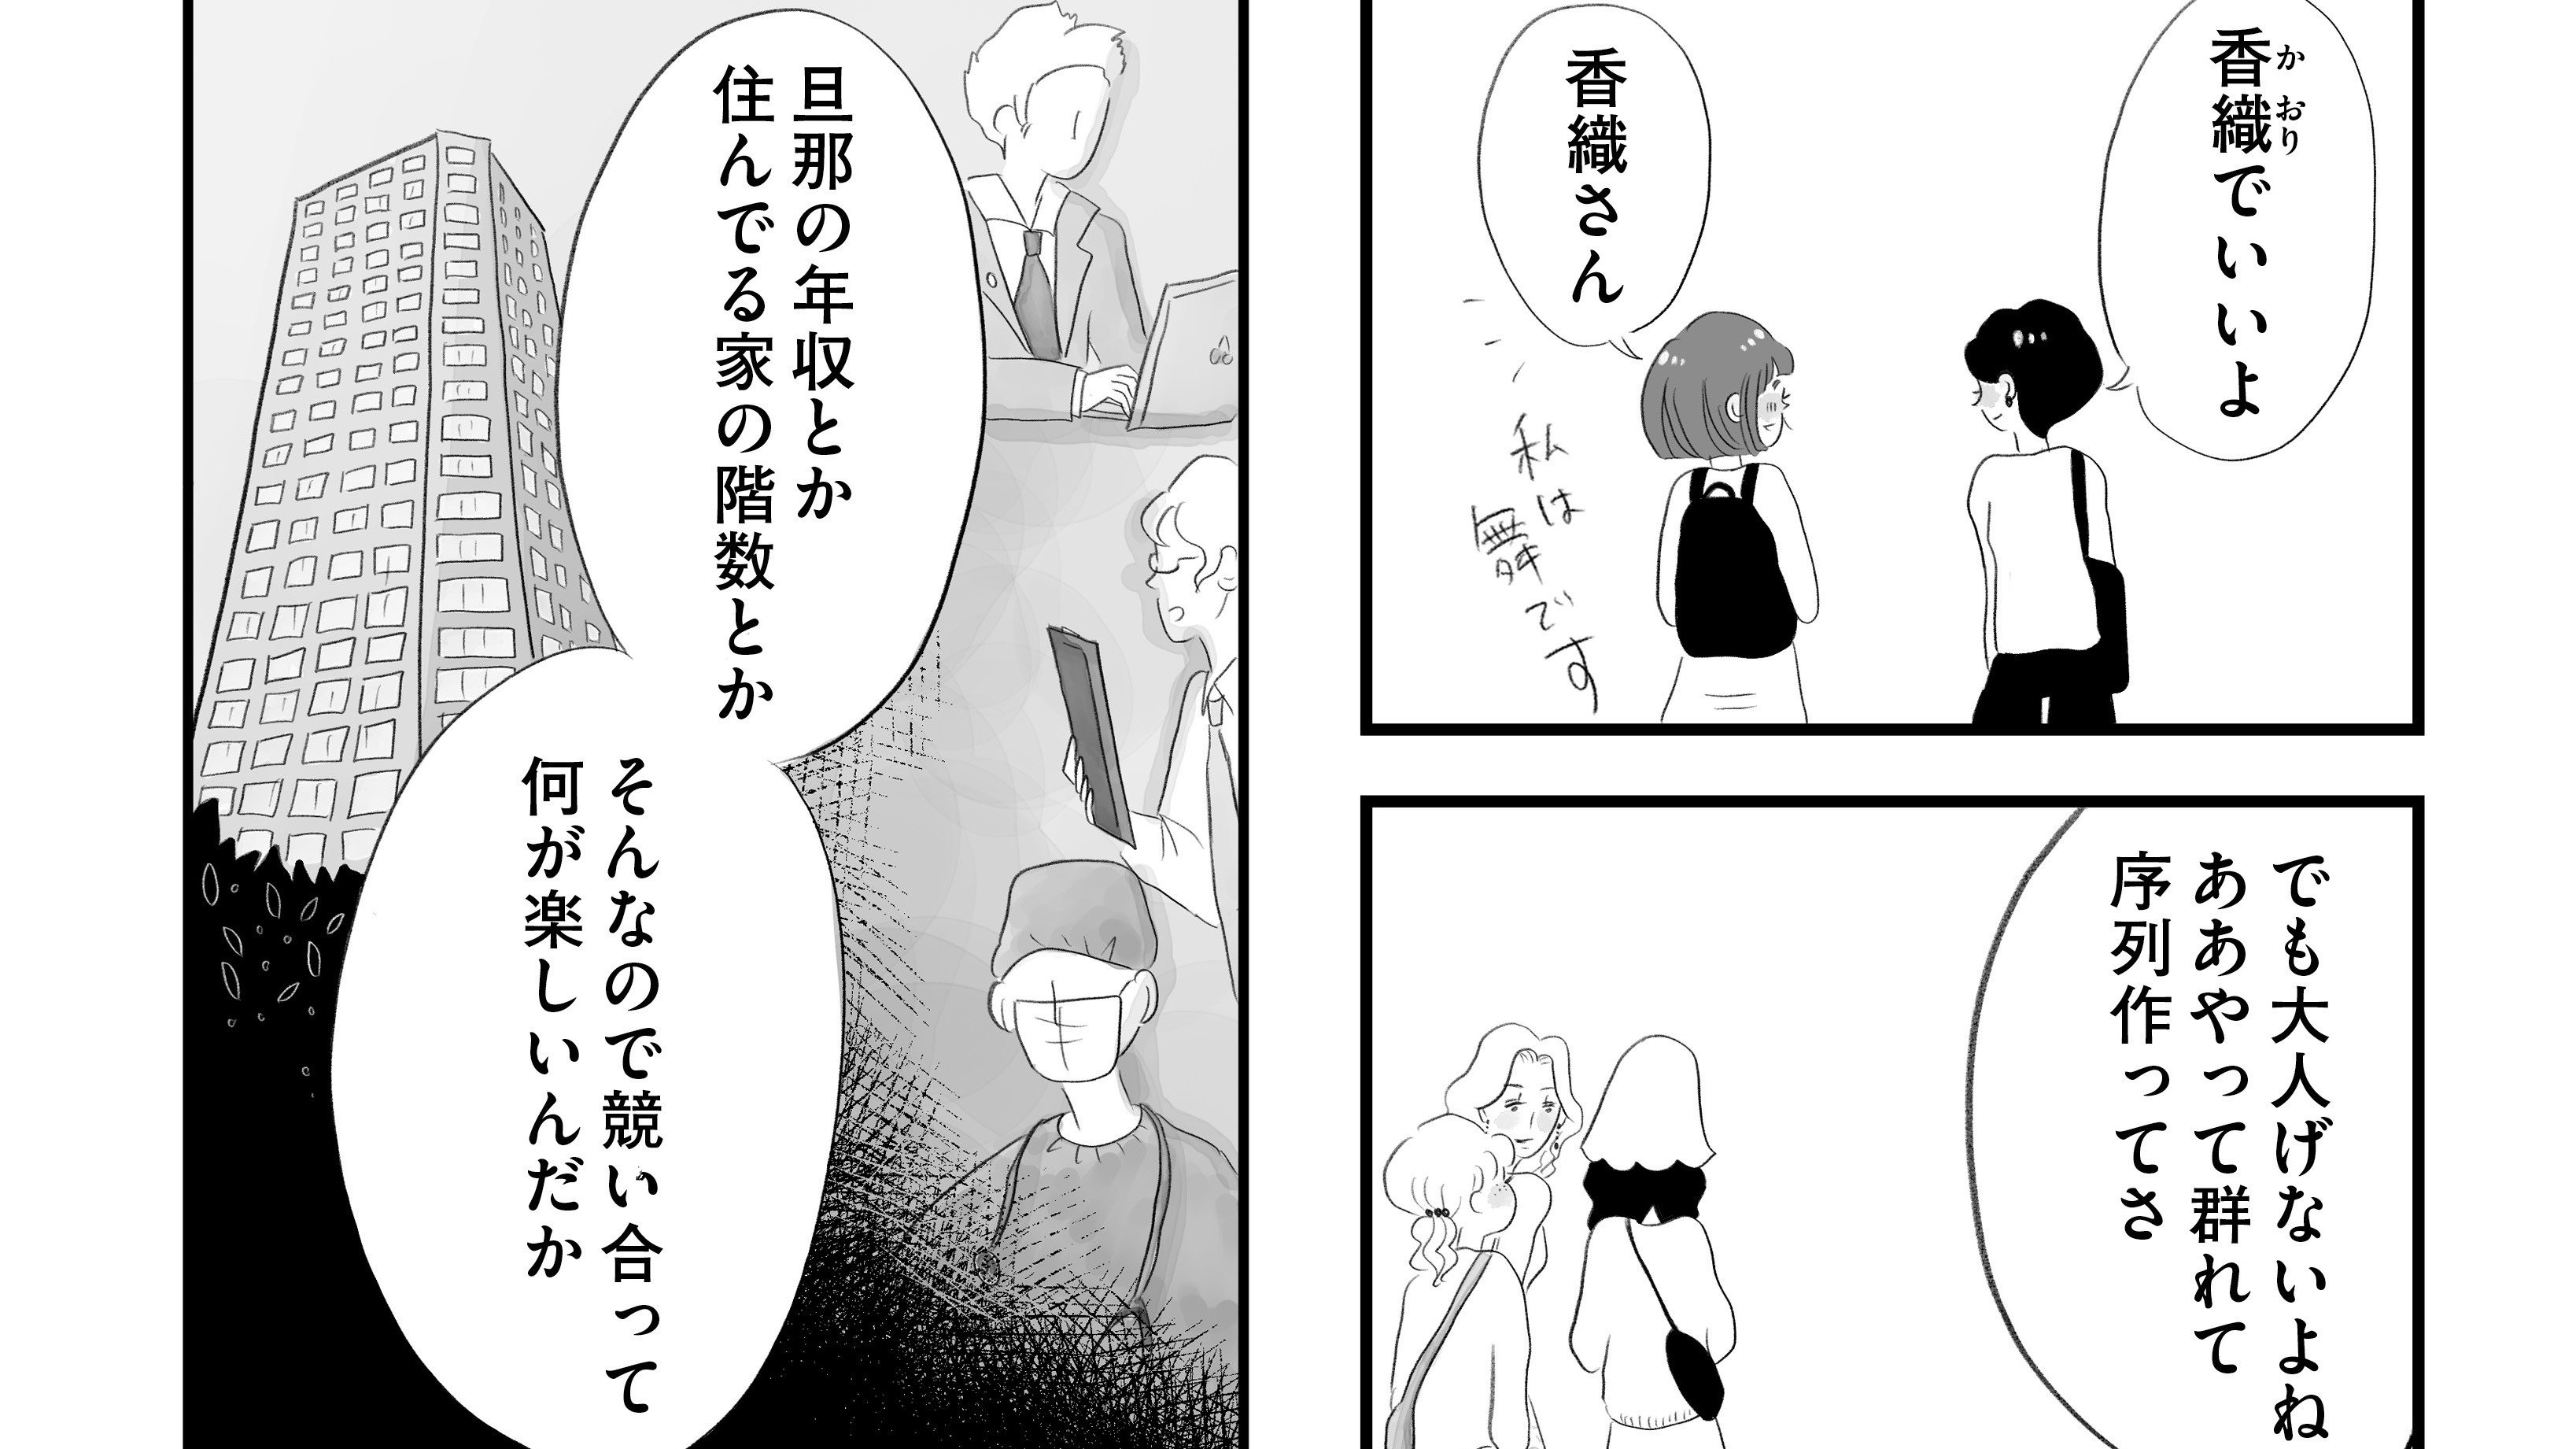 【漫画】『タワマンに住んで後悔してる』東京の本社への転勤、憧れのタワマン生活。普通よりもっと幸せな生活が始まるはずだったのに―